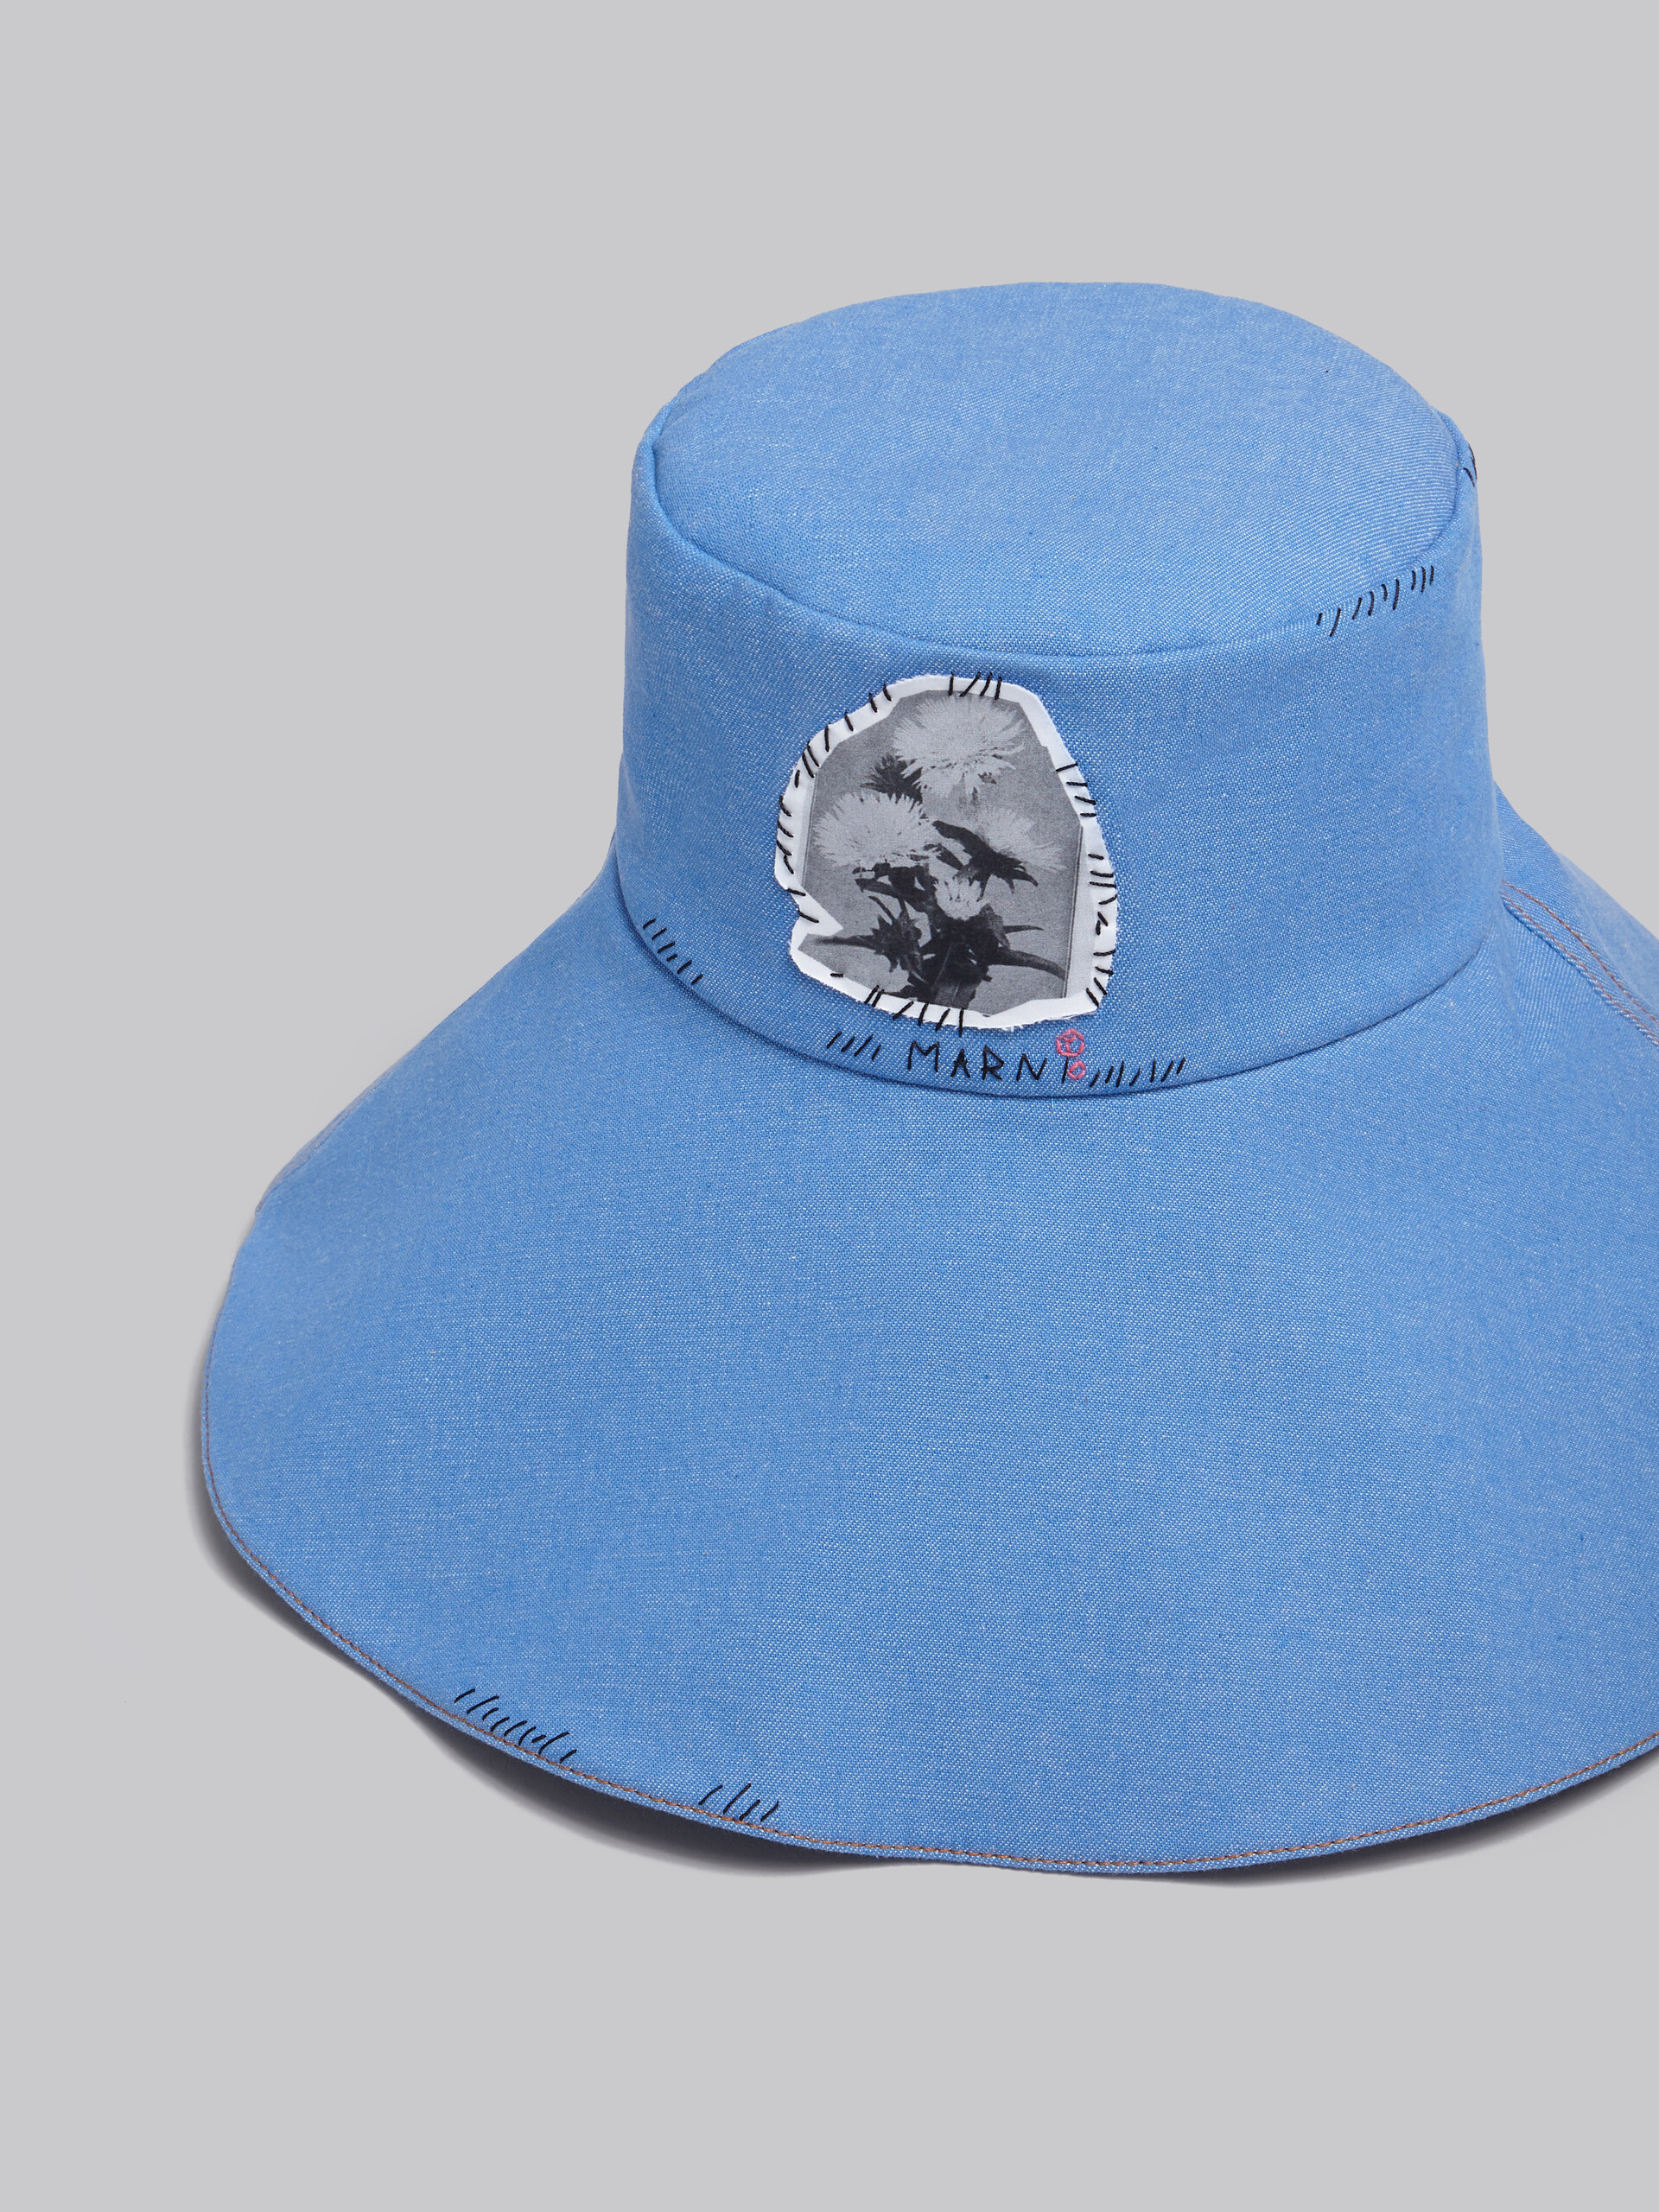 Blauer Fischerhut aus Denim mit Marni-Flicken - Hüte - Image 4